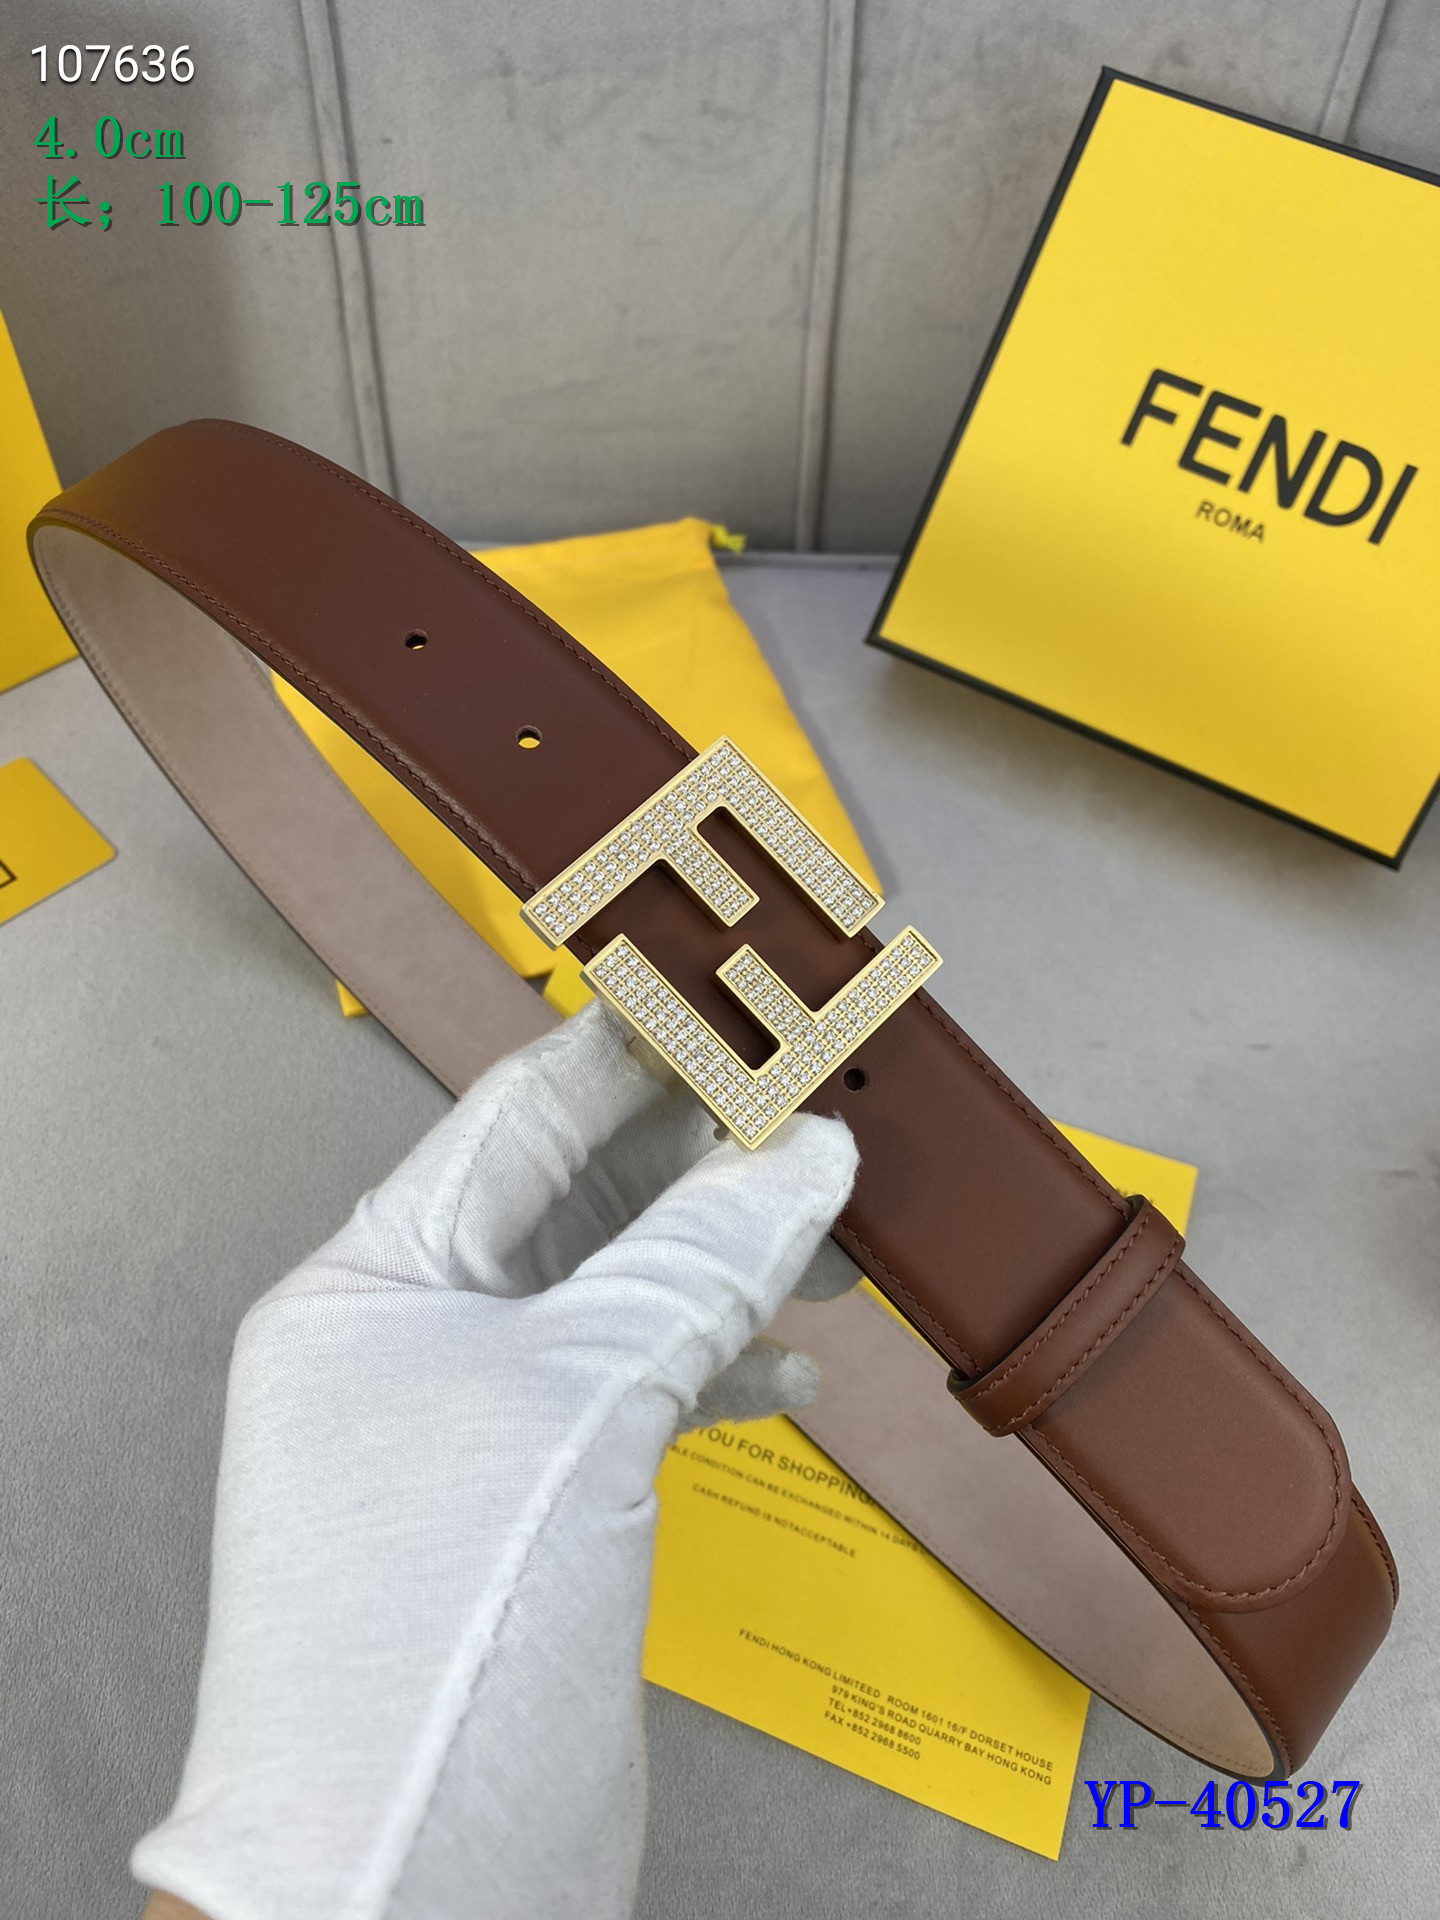 Fendi Belts 4.0cm Width 003